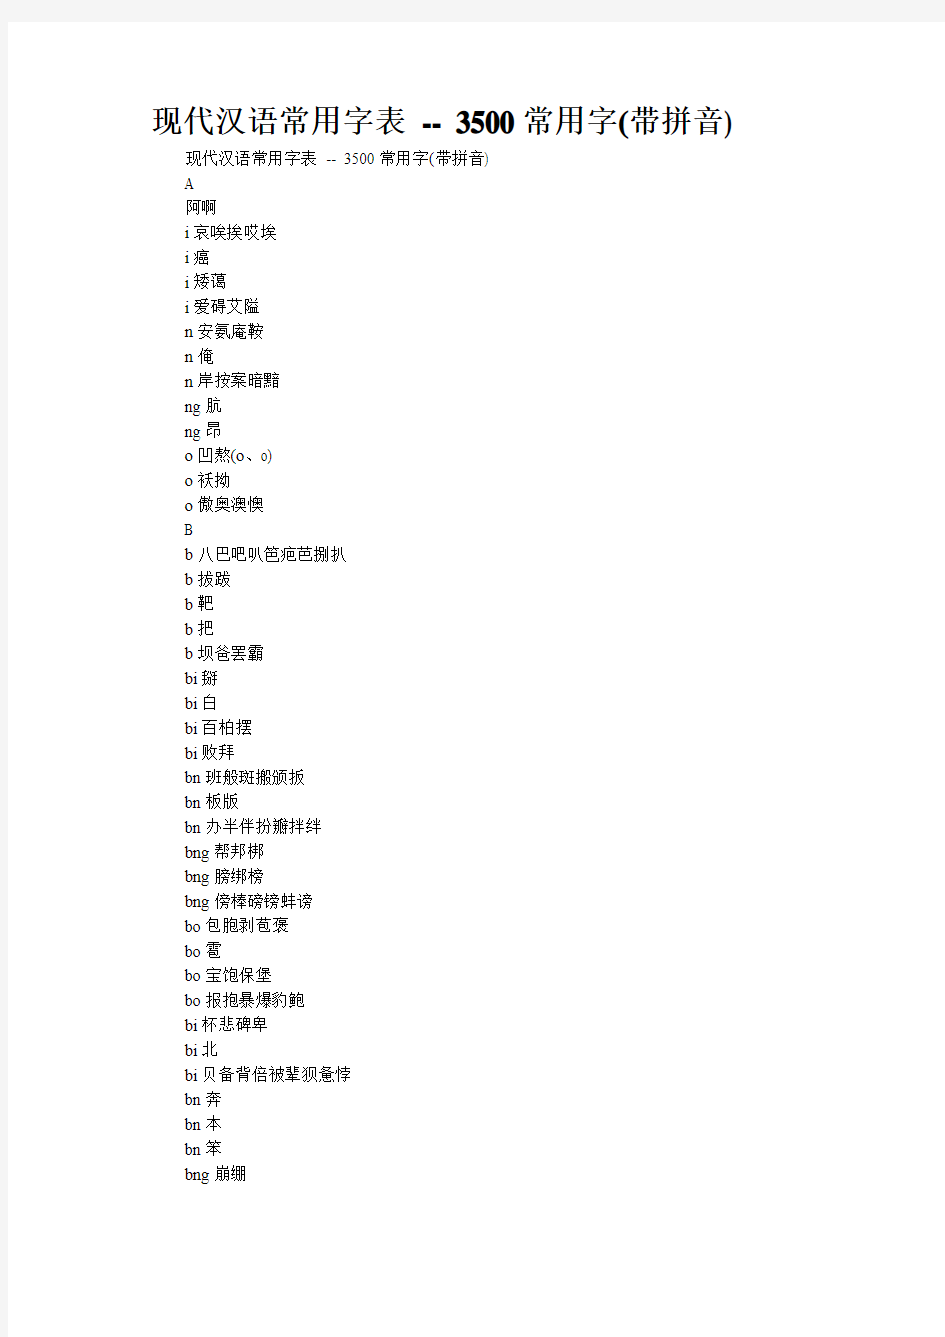 现代汉语常用字表 -- 3500常用字(带拼音)